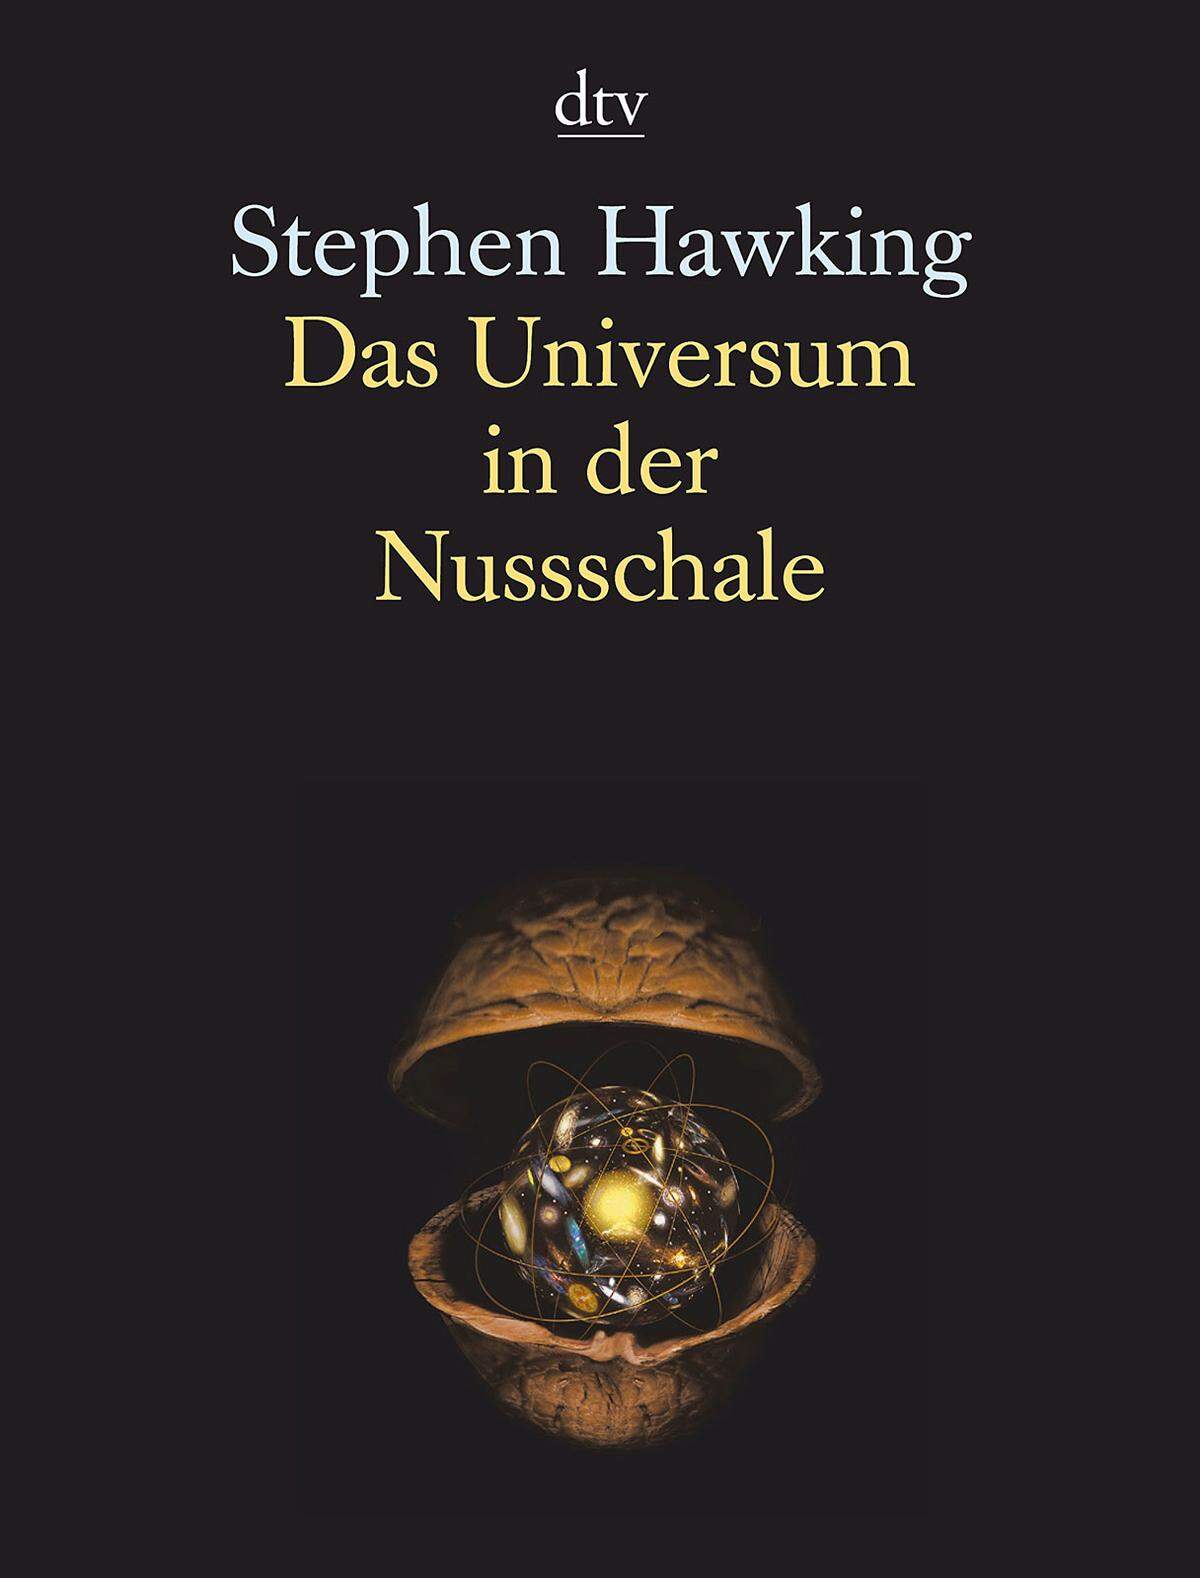 "Das Universum in der Nussschale" (2001): Hawking befasst sich in diesem Buch mit verschiedenen Theorien, die die Kräfte der Physik erklären. Der Text und viele Illustrationen zeigen, wie man sich das Weltall und seine Bausteine vorzustellen hat.